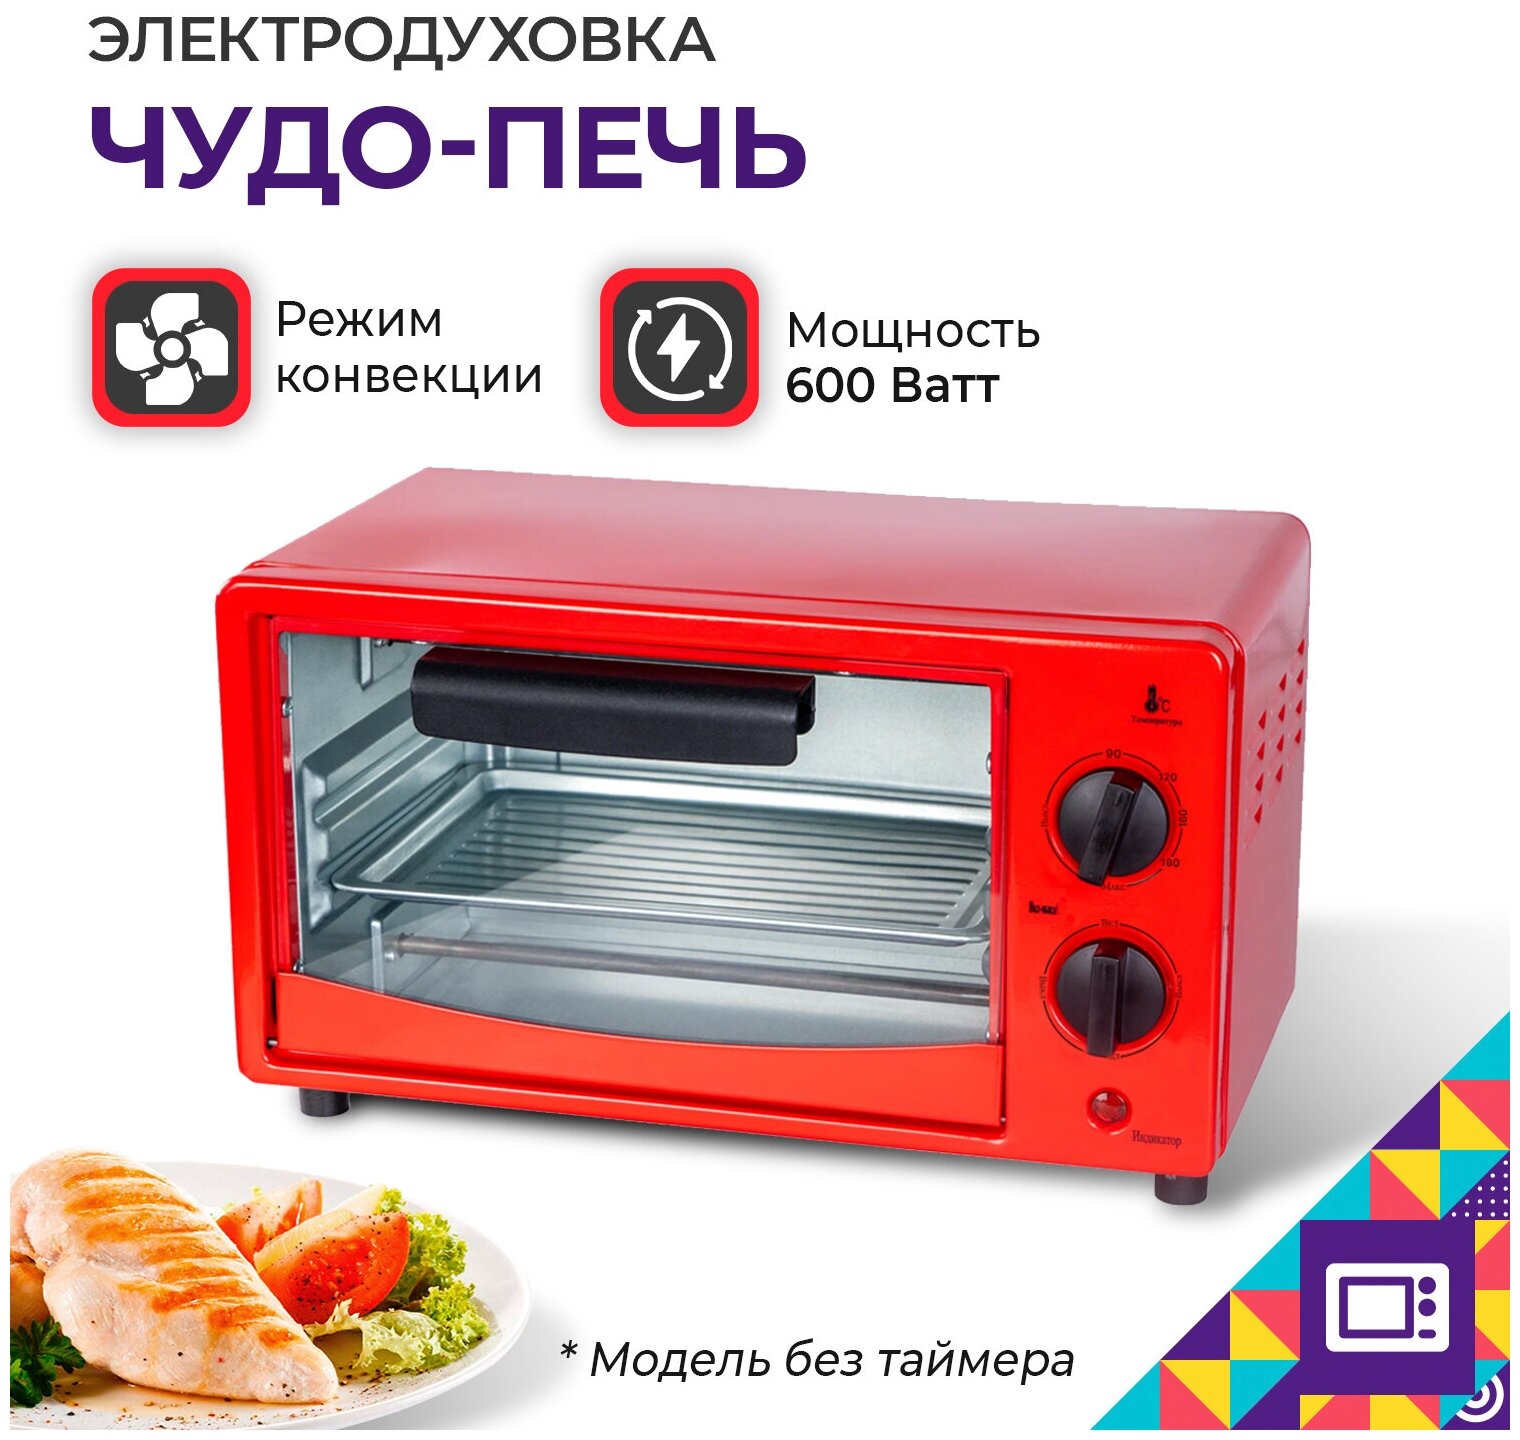 Мини печь электрическая духовка с конвекцией и грилем электропечь — купить в интернет-магазине по низкой цене на Яндекс Маркете